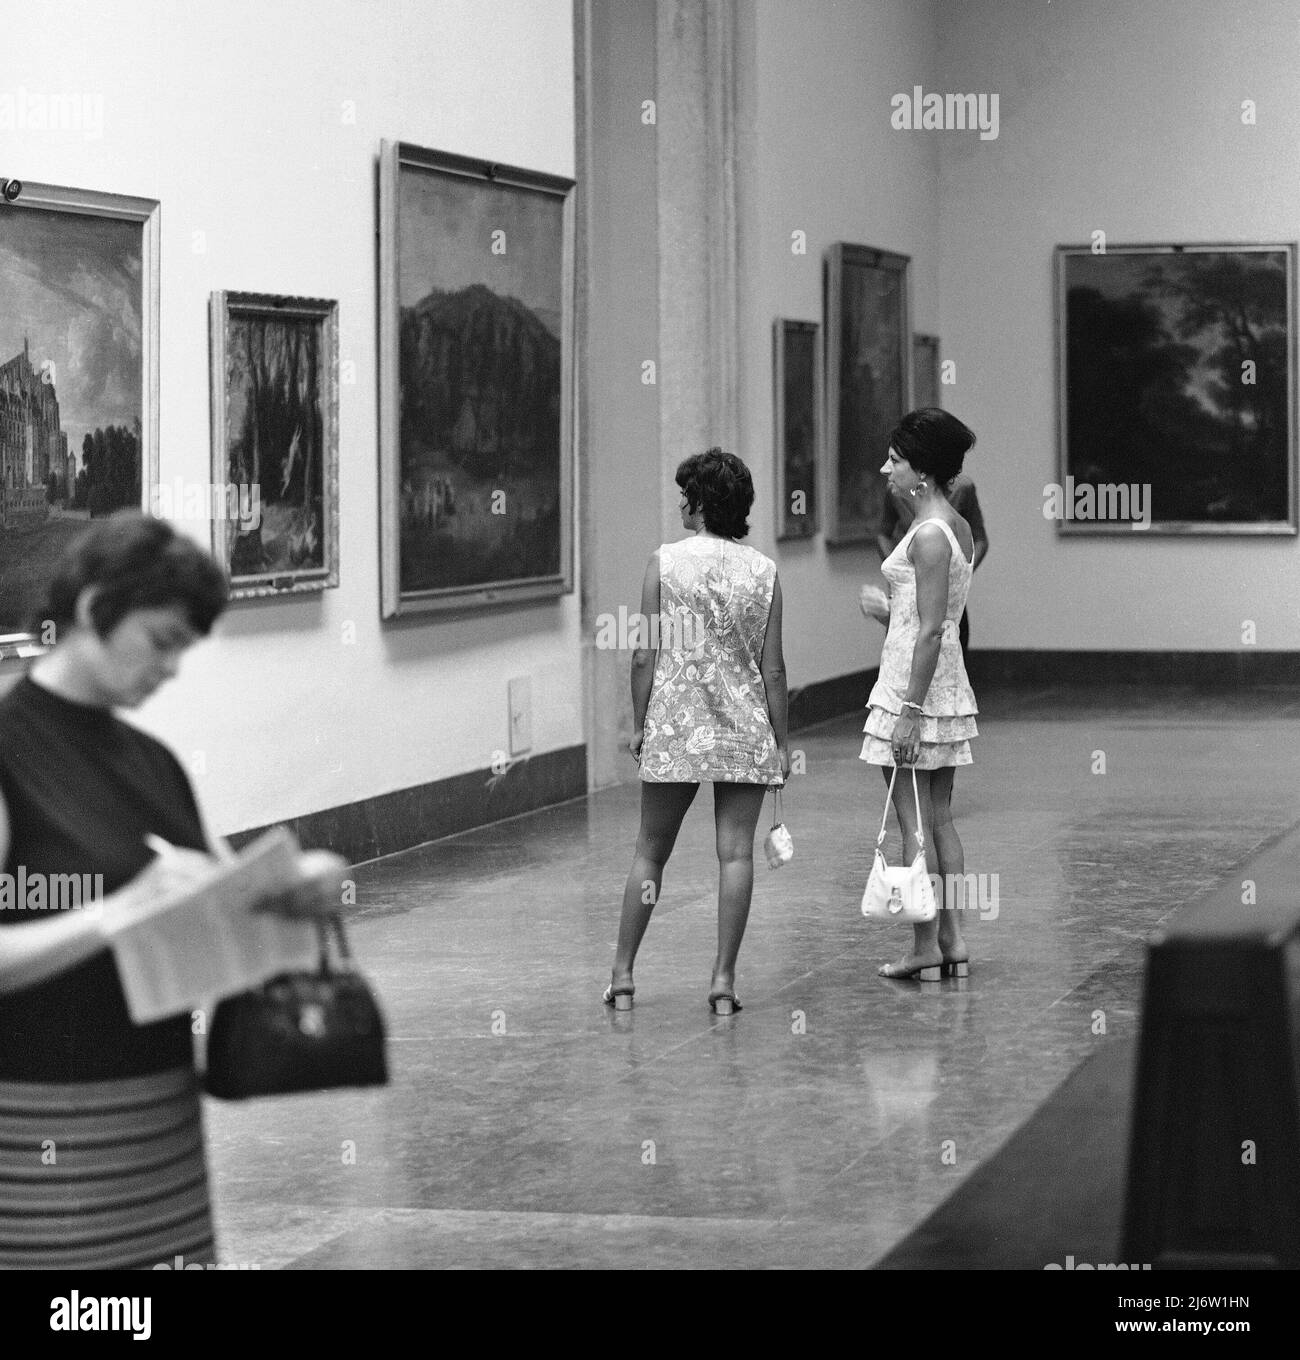 N - FOTOGRAFIA EN B/N - MIRADAS - DOS VISITANTES EN EL INTERIOR DEL MUSEO 1960 - N° B/N 71422. LOCATION: MUSEO DEL PRADO-INTERIOR. MADRID. SPAGNA. Foto Stock